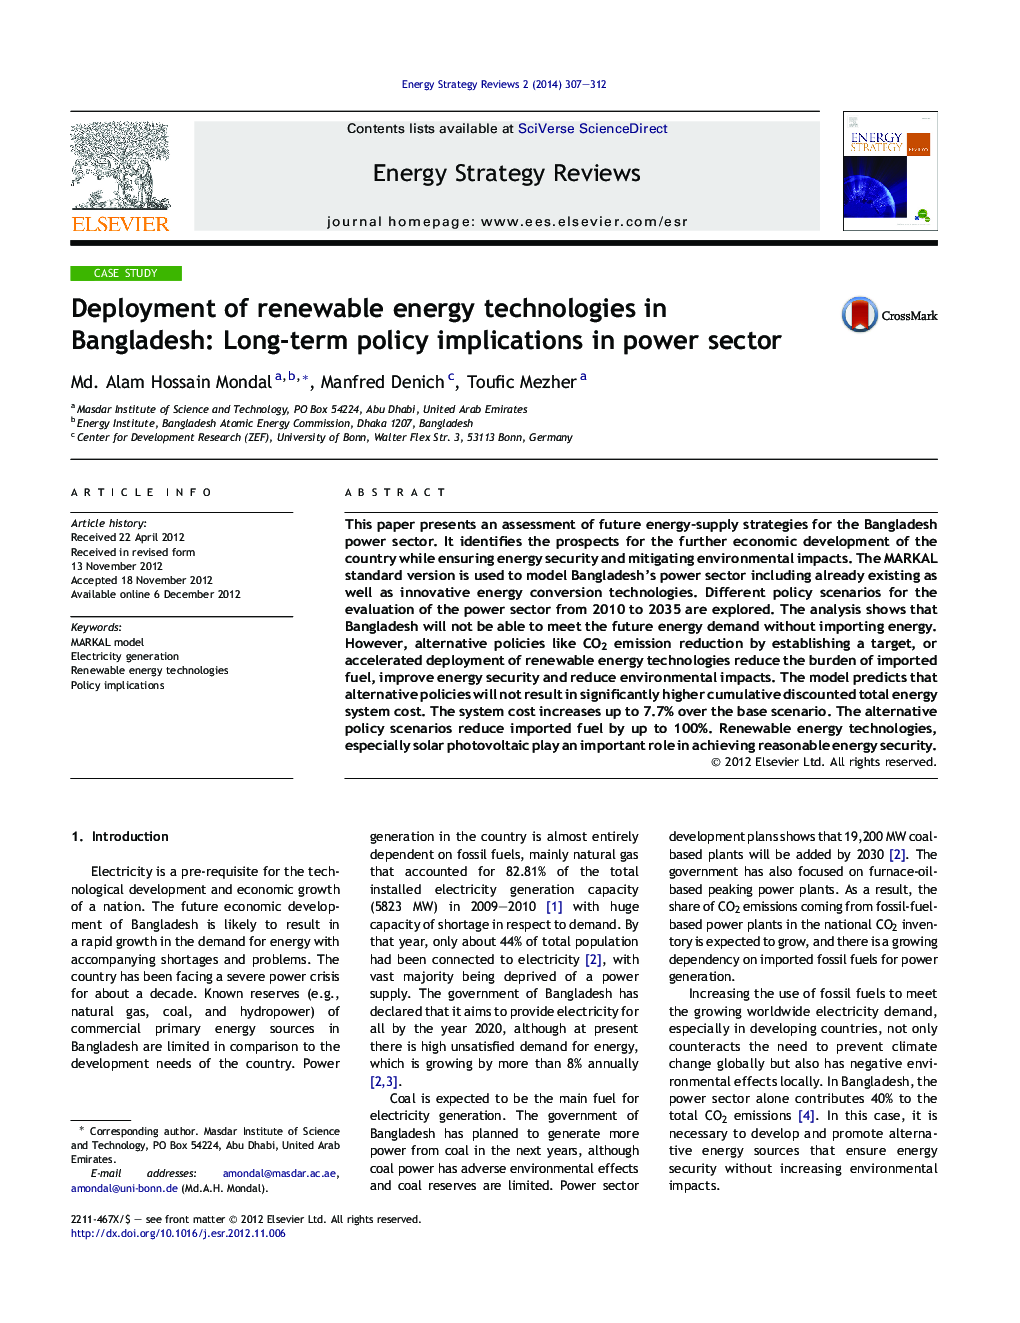 استقرار فن آوری های انرژی تجدید پذیر در بنگلادش: پیامدهای سیاست های بلند مدت در بخش انرژی 